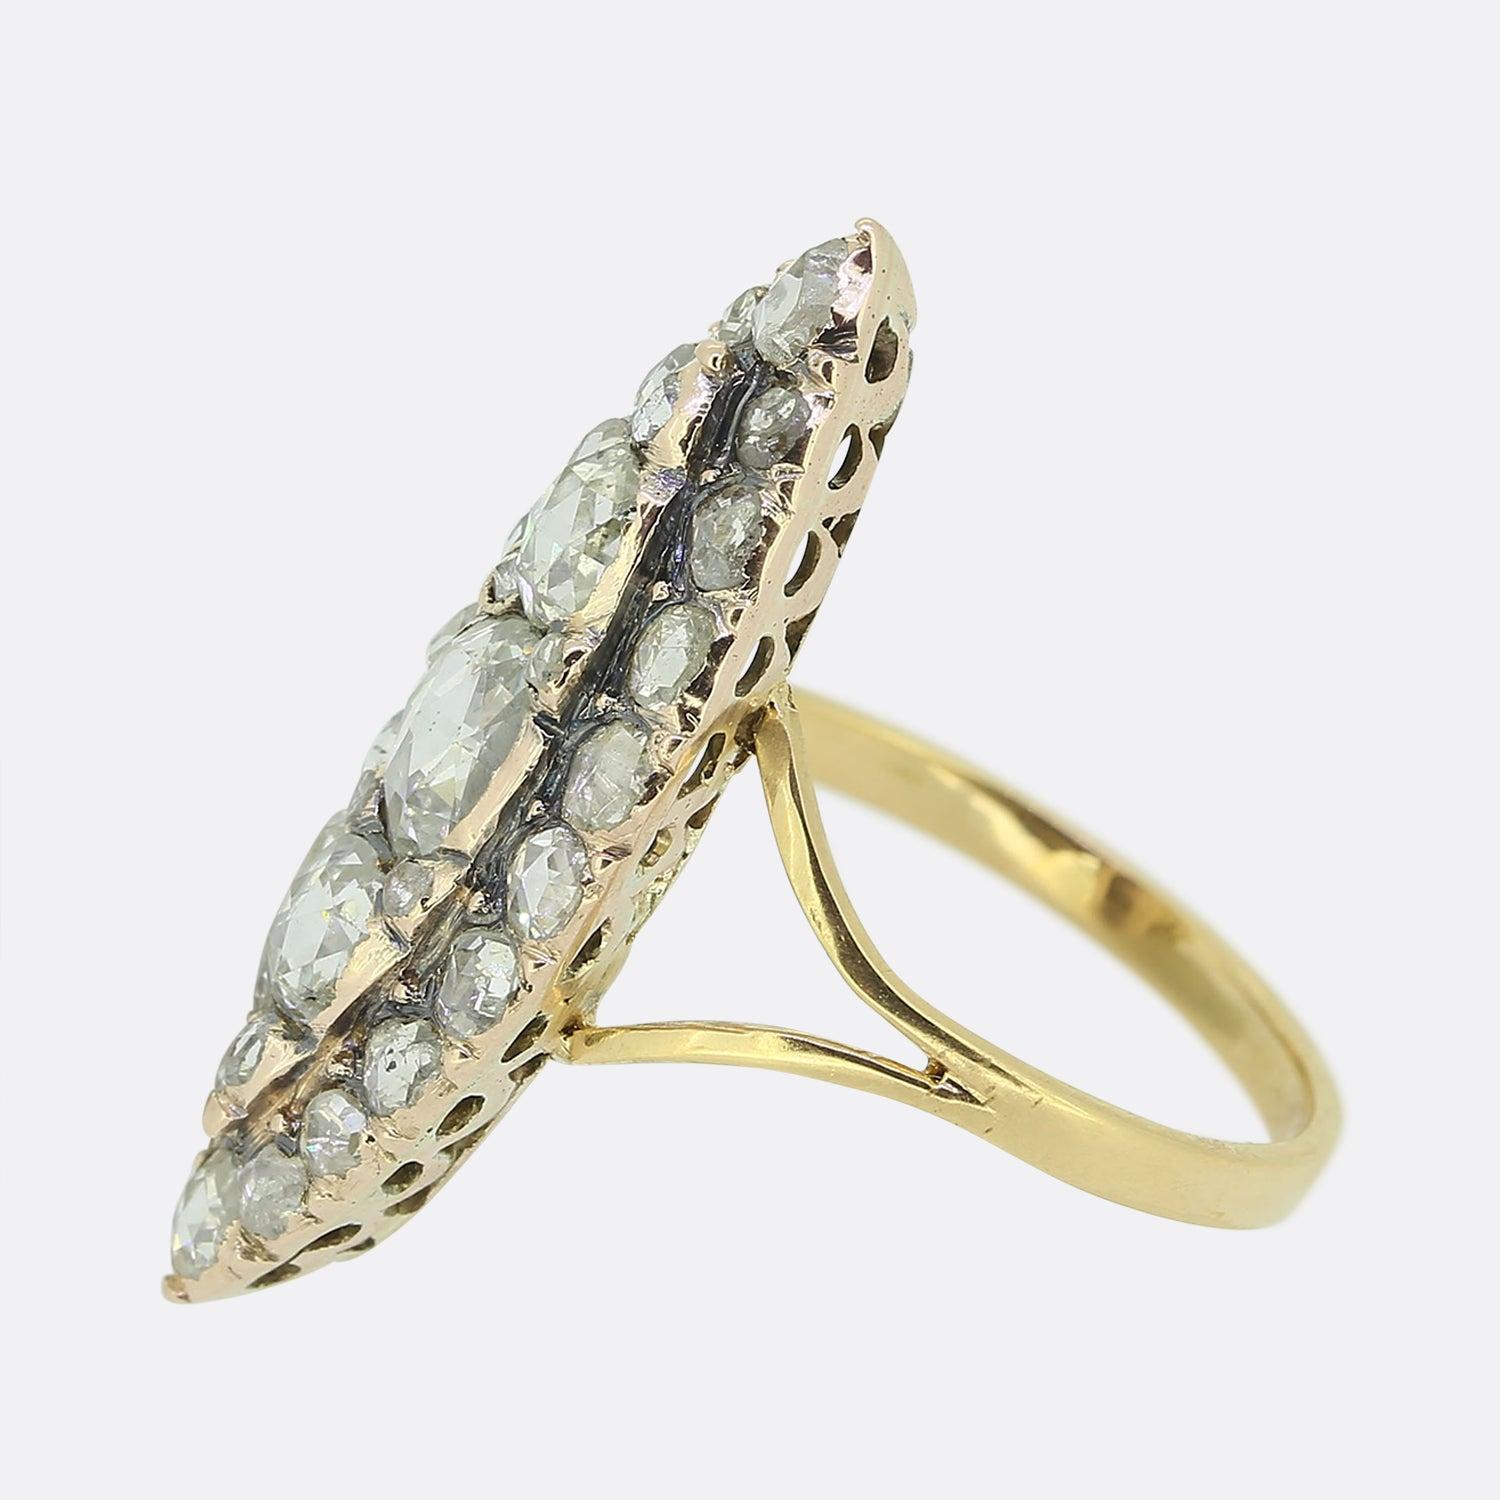 Hier haben wir einen wunderschönen Navette-Ring, der ursprünglich aus der georgianischen Zeit stammt. Die Vorderseite dieses antiken Schmuckstücks wurde aus Gelbgold in eine schiffsähnliche Form gebracht, die ein Trio von ovalen Diamanten im